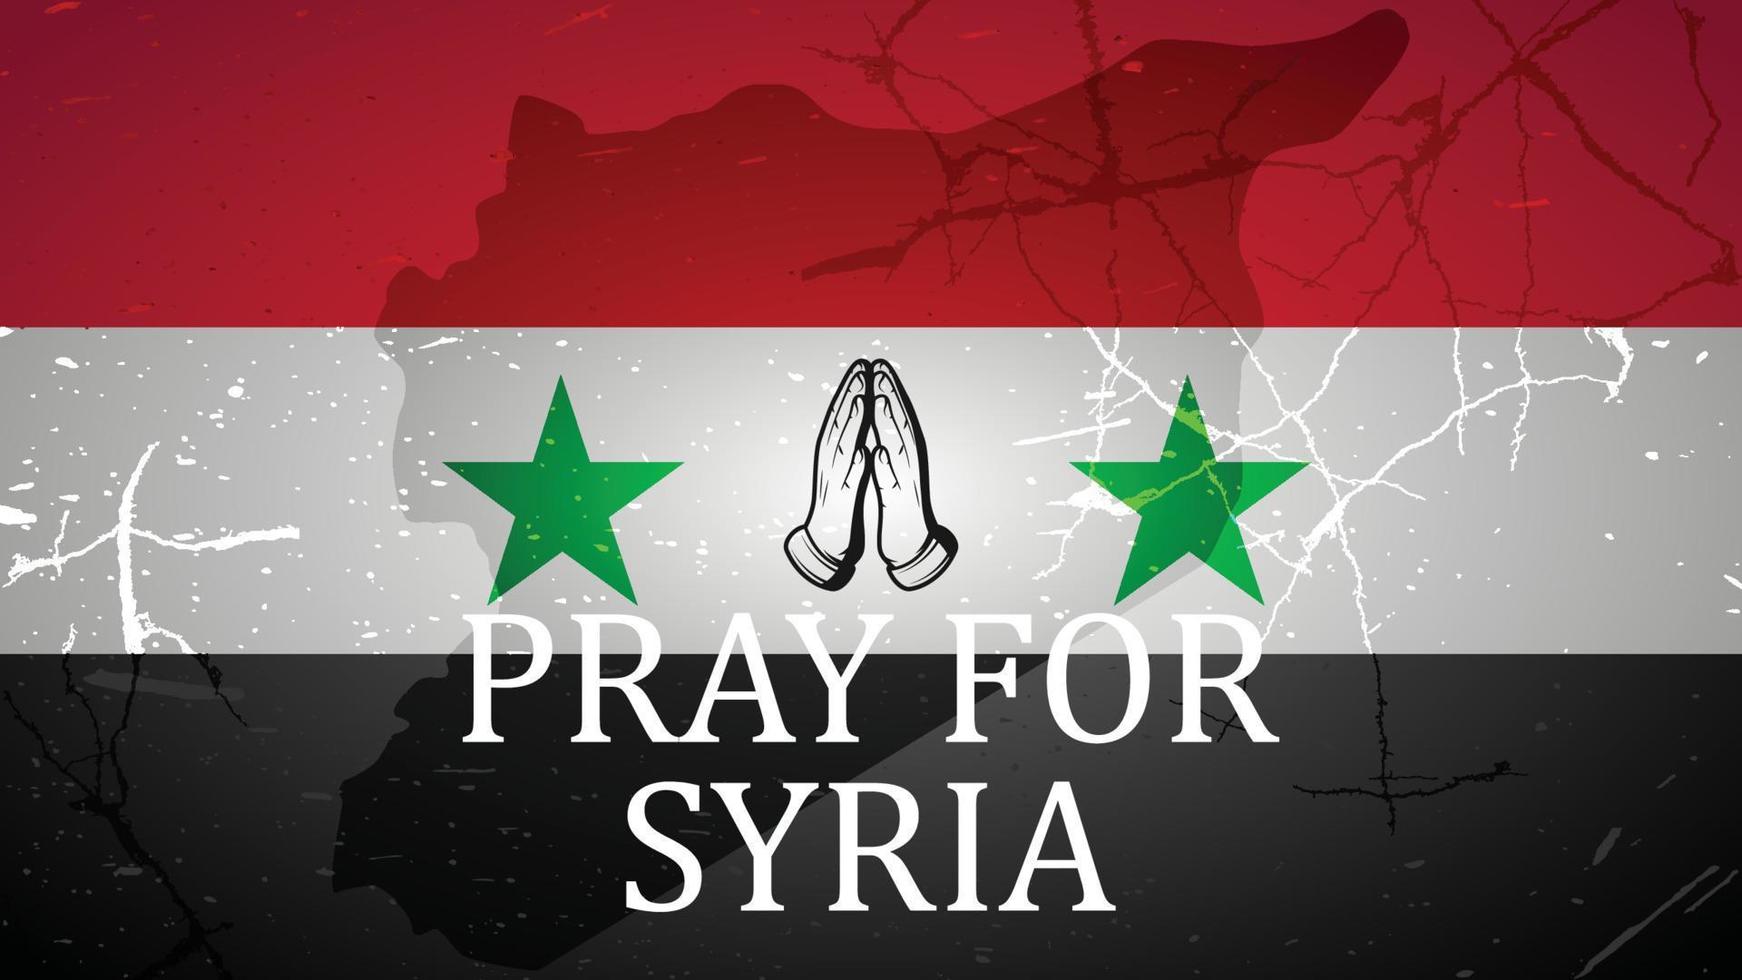 proche vue de Syrie drapeau, prier pour Syrie, tremblement de terre vecteur grunge illustration poste, bannière